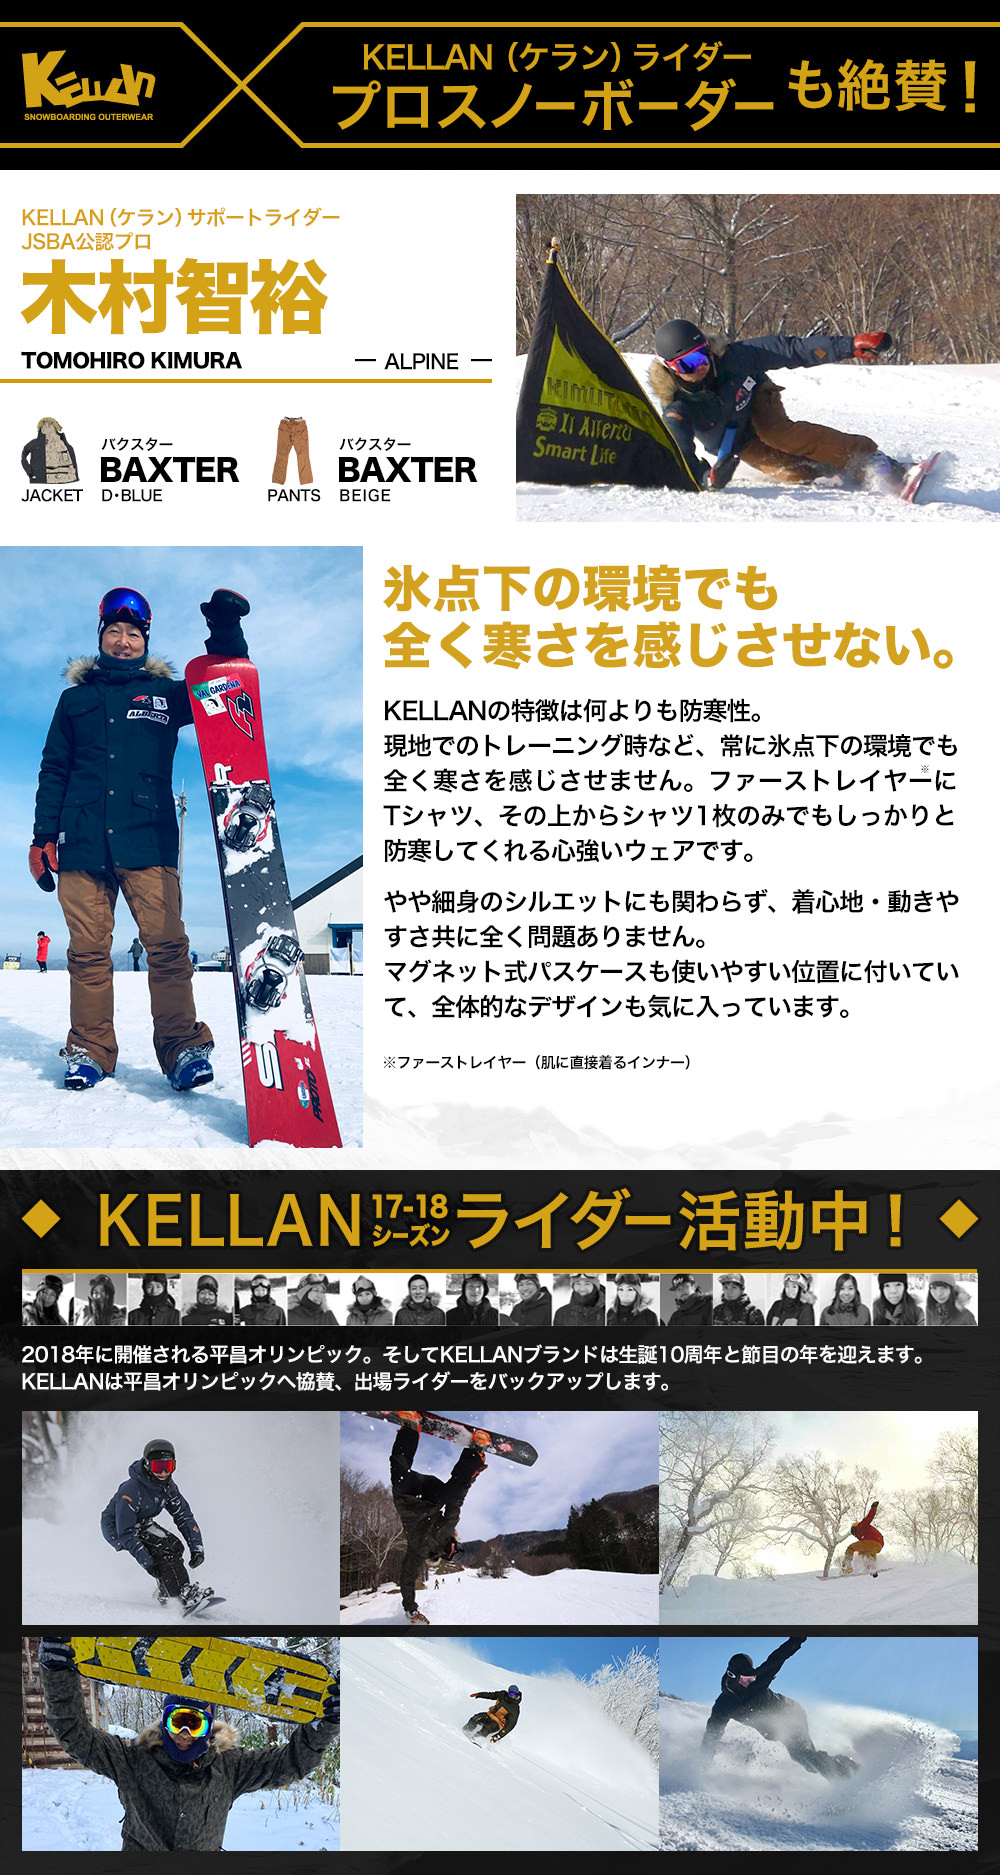 ベストスポーツ スノボ ウェア メンズ レディース ケラン バクスタージャケット スノーボードウェア スキーウェア 男女兼用 大きいサイズ 耐水圧 KELLAN BAXTER JKT 10101 送料無料 ユニセックス 小さいサイズ